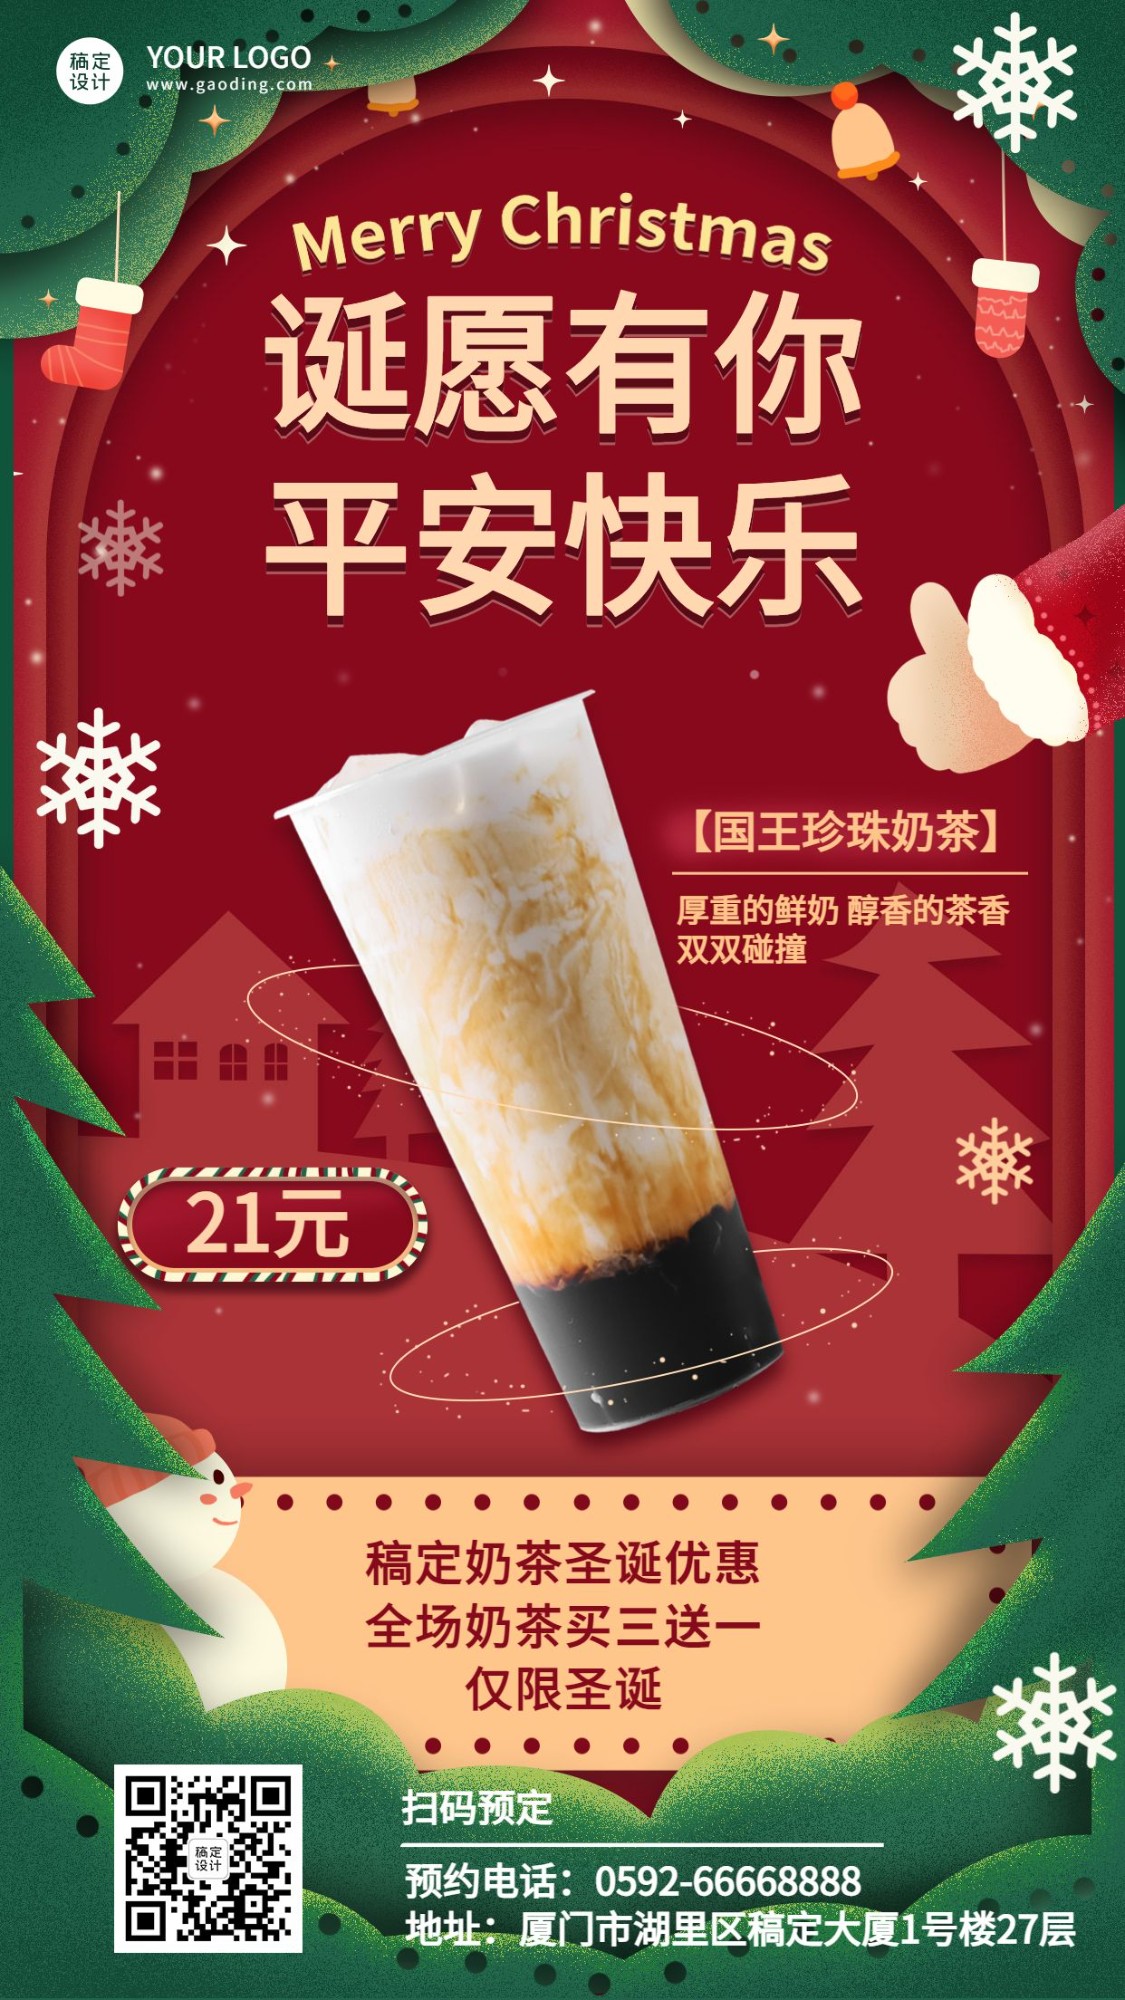 圣诞节奶茶饮品产品营销实景海报预览效果